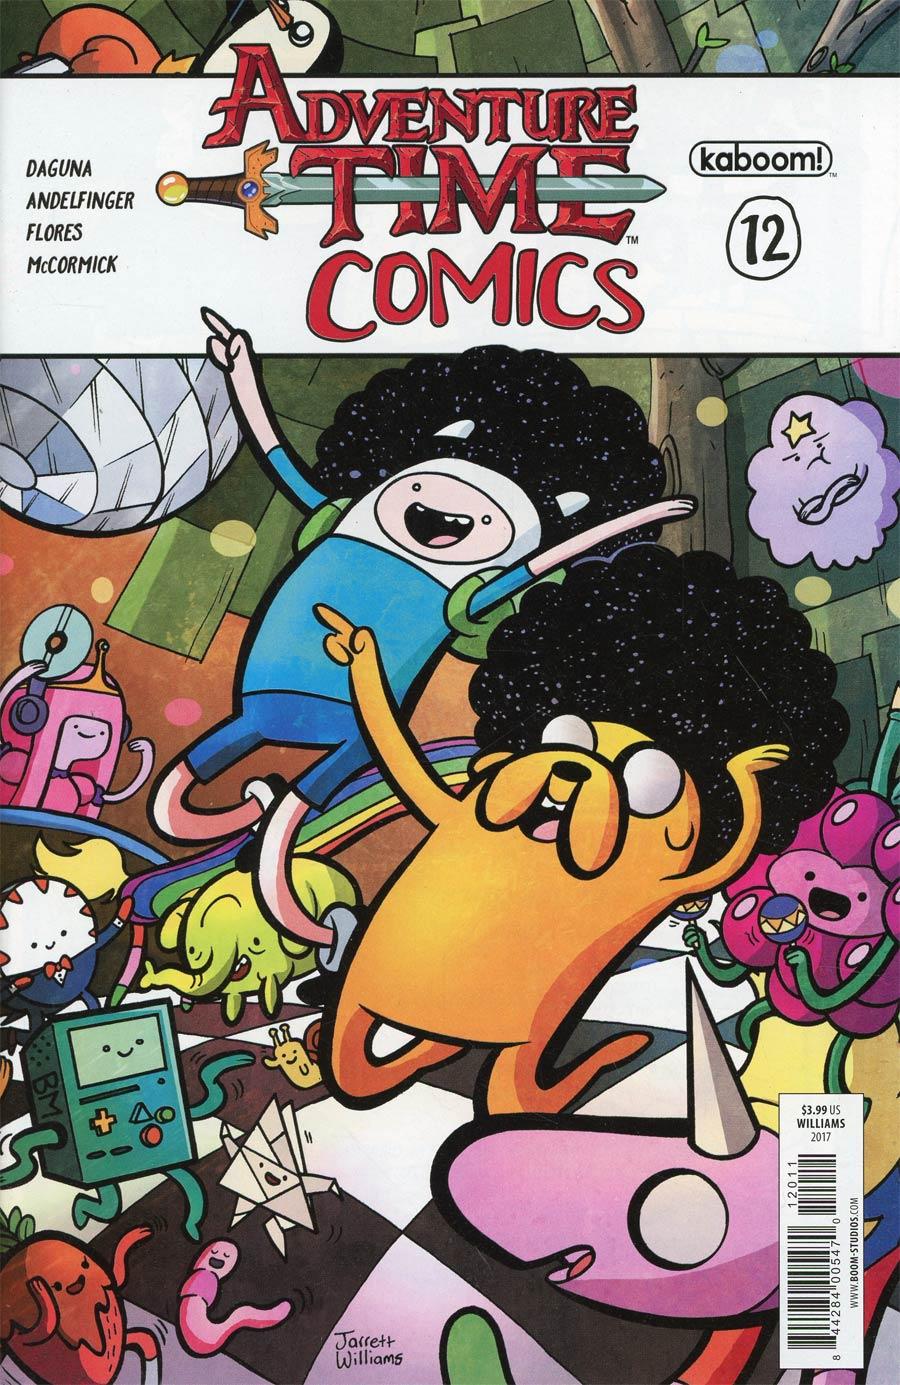 Adventure Time Comics Vol. 1 #12